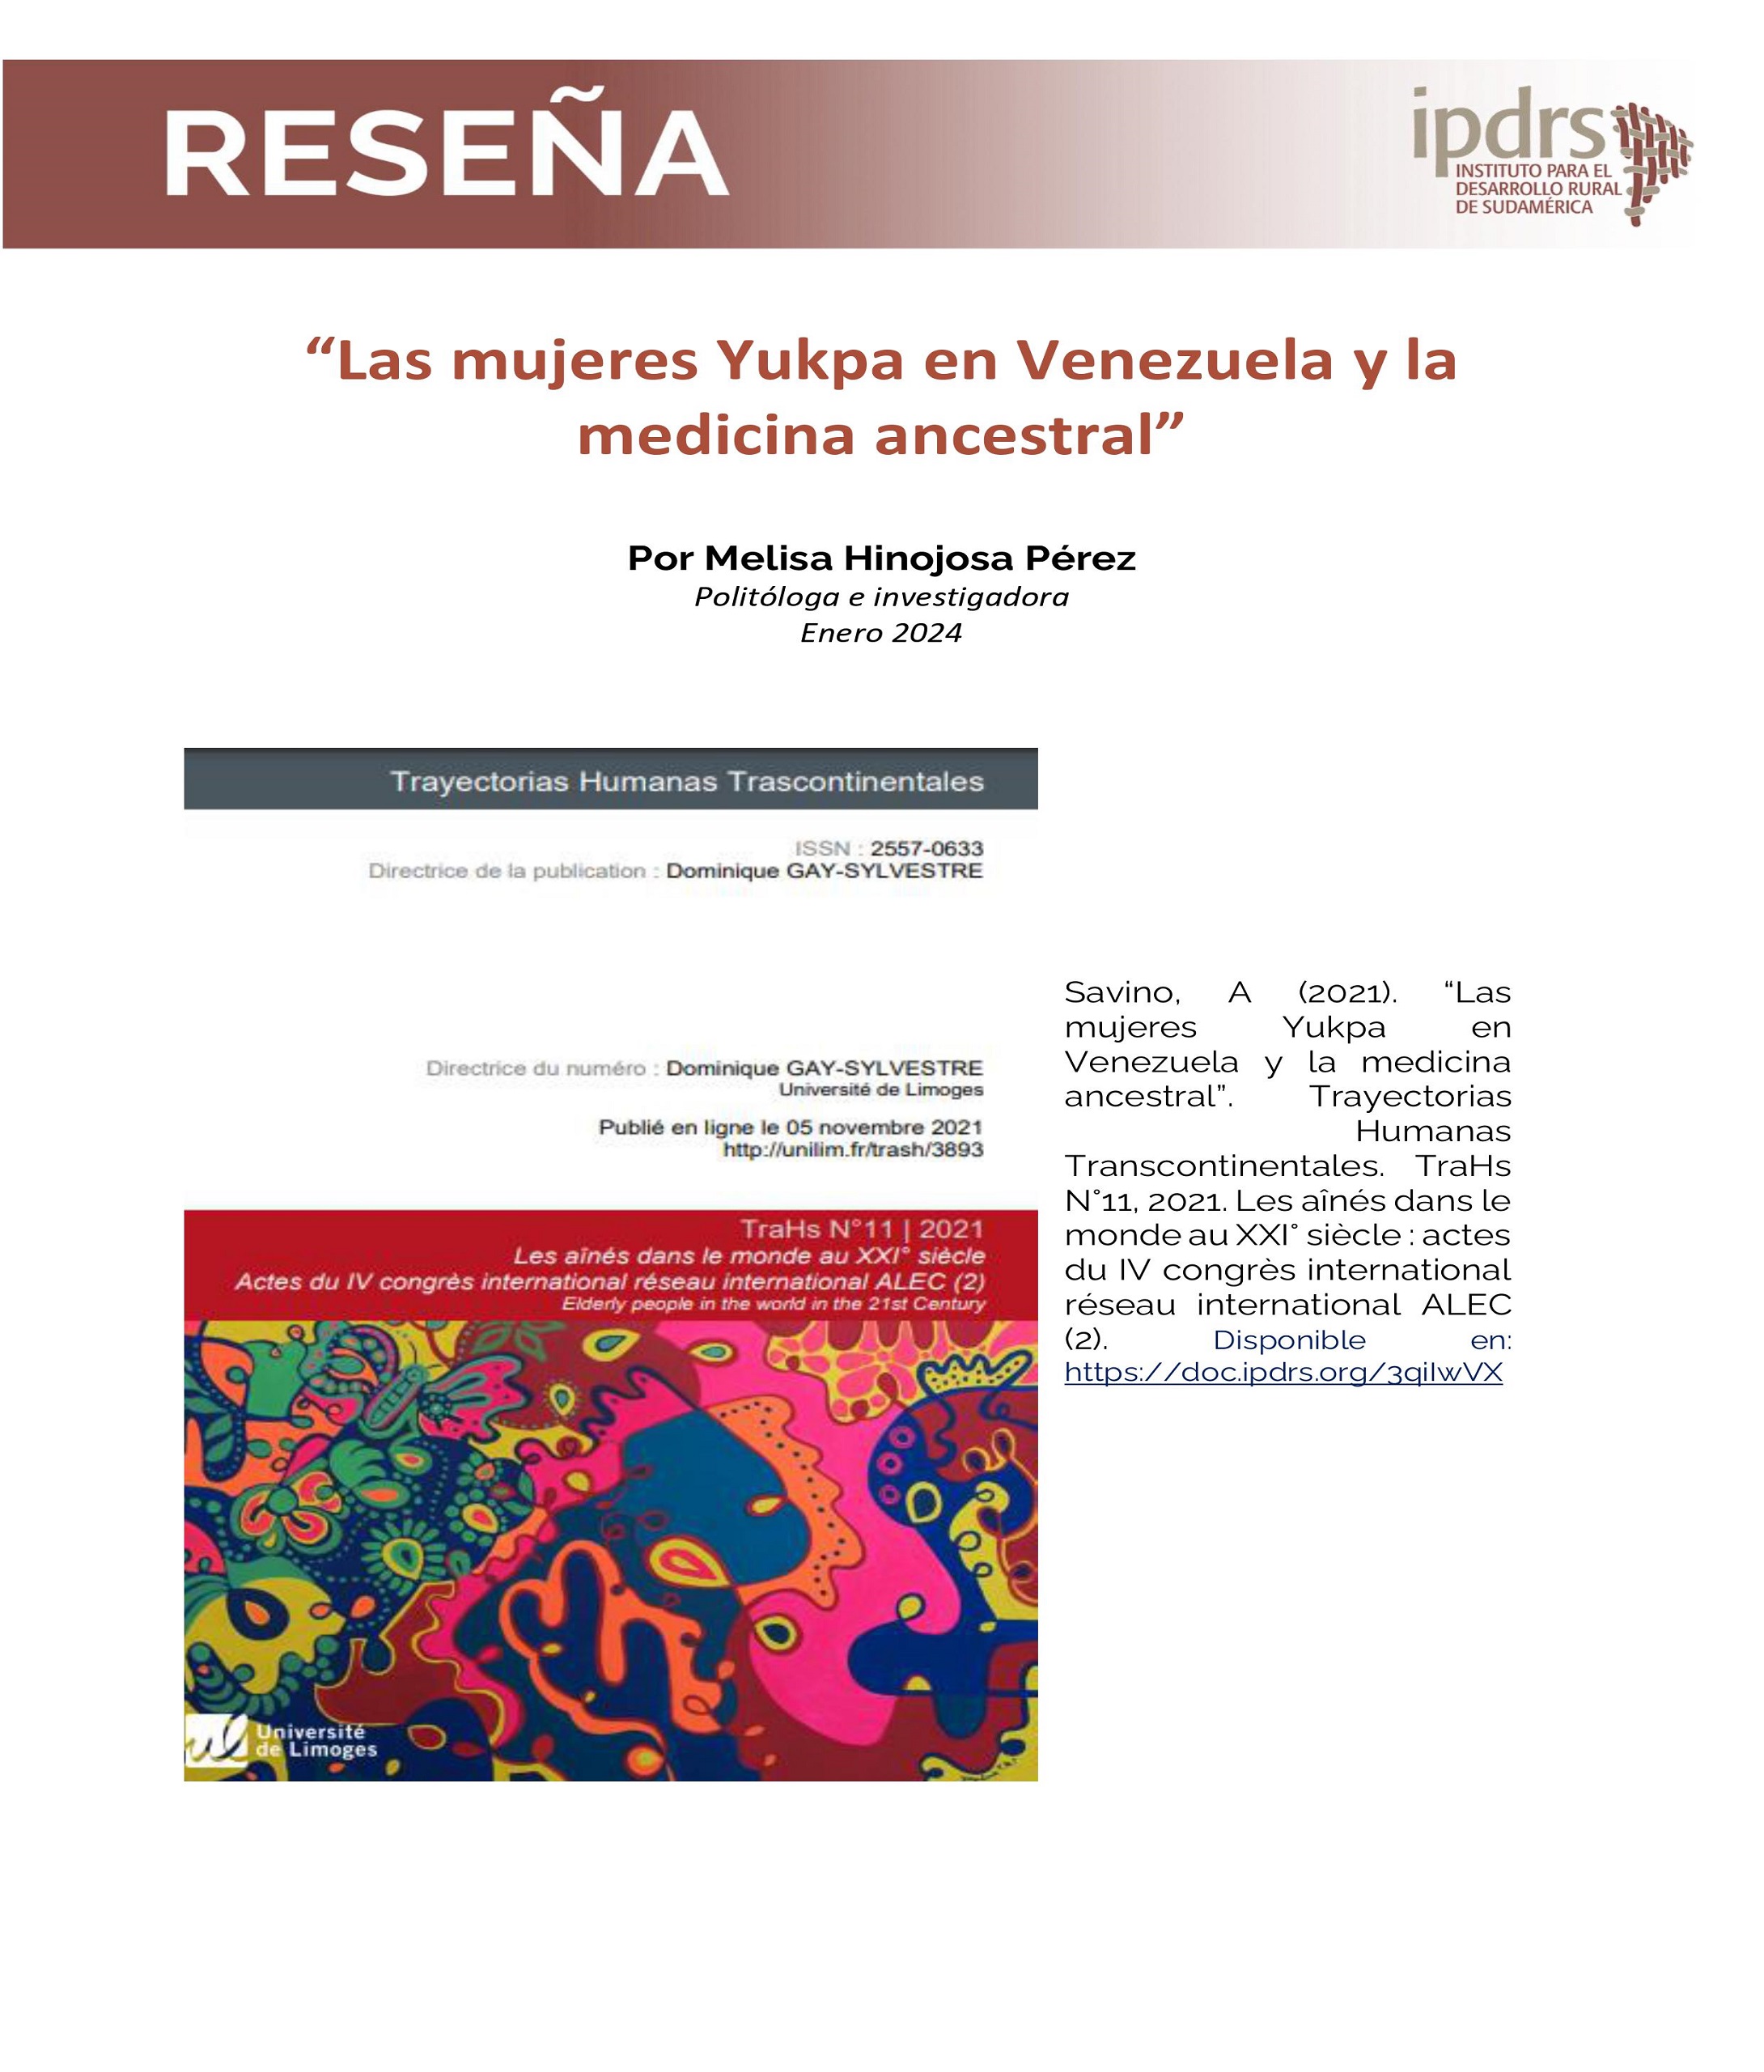 Reseña: “Las mujeres Yukpa en Venezuela y la medicina ancestral”